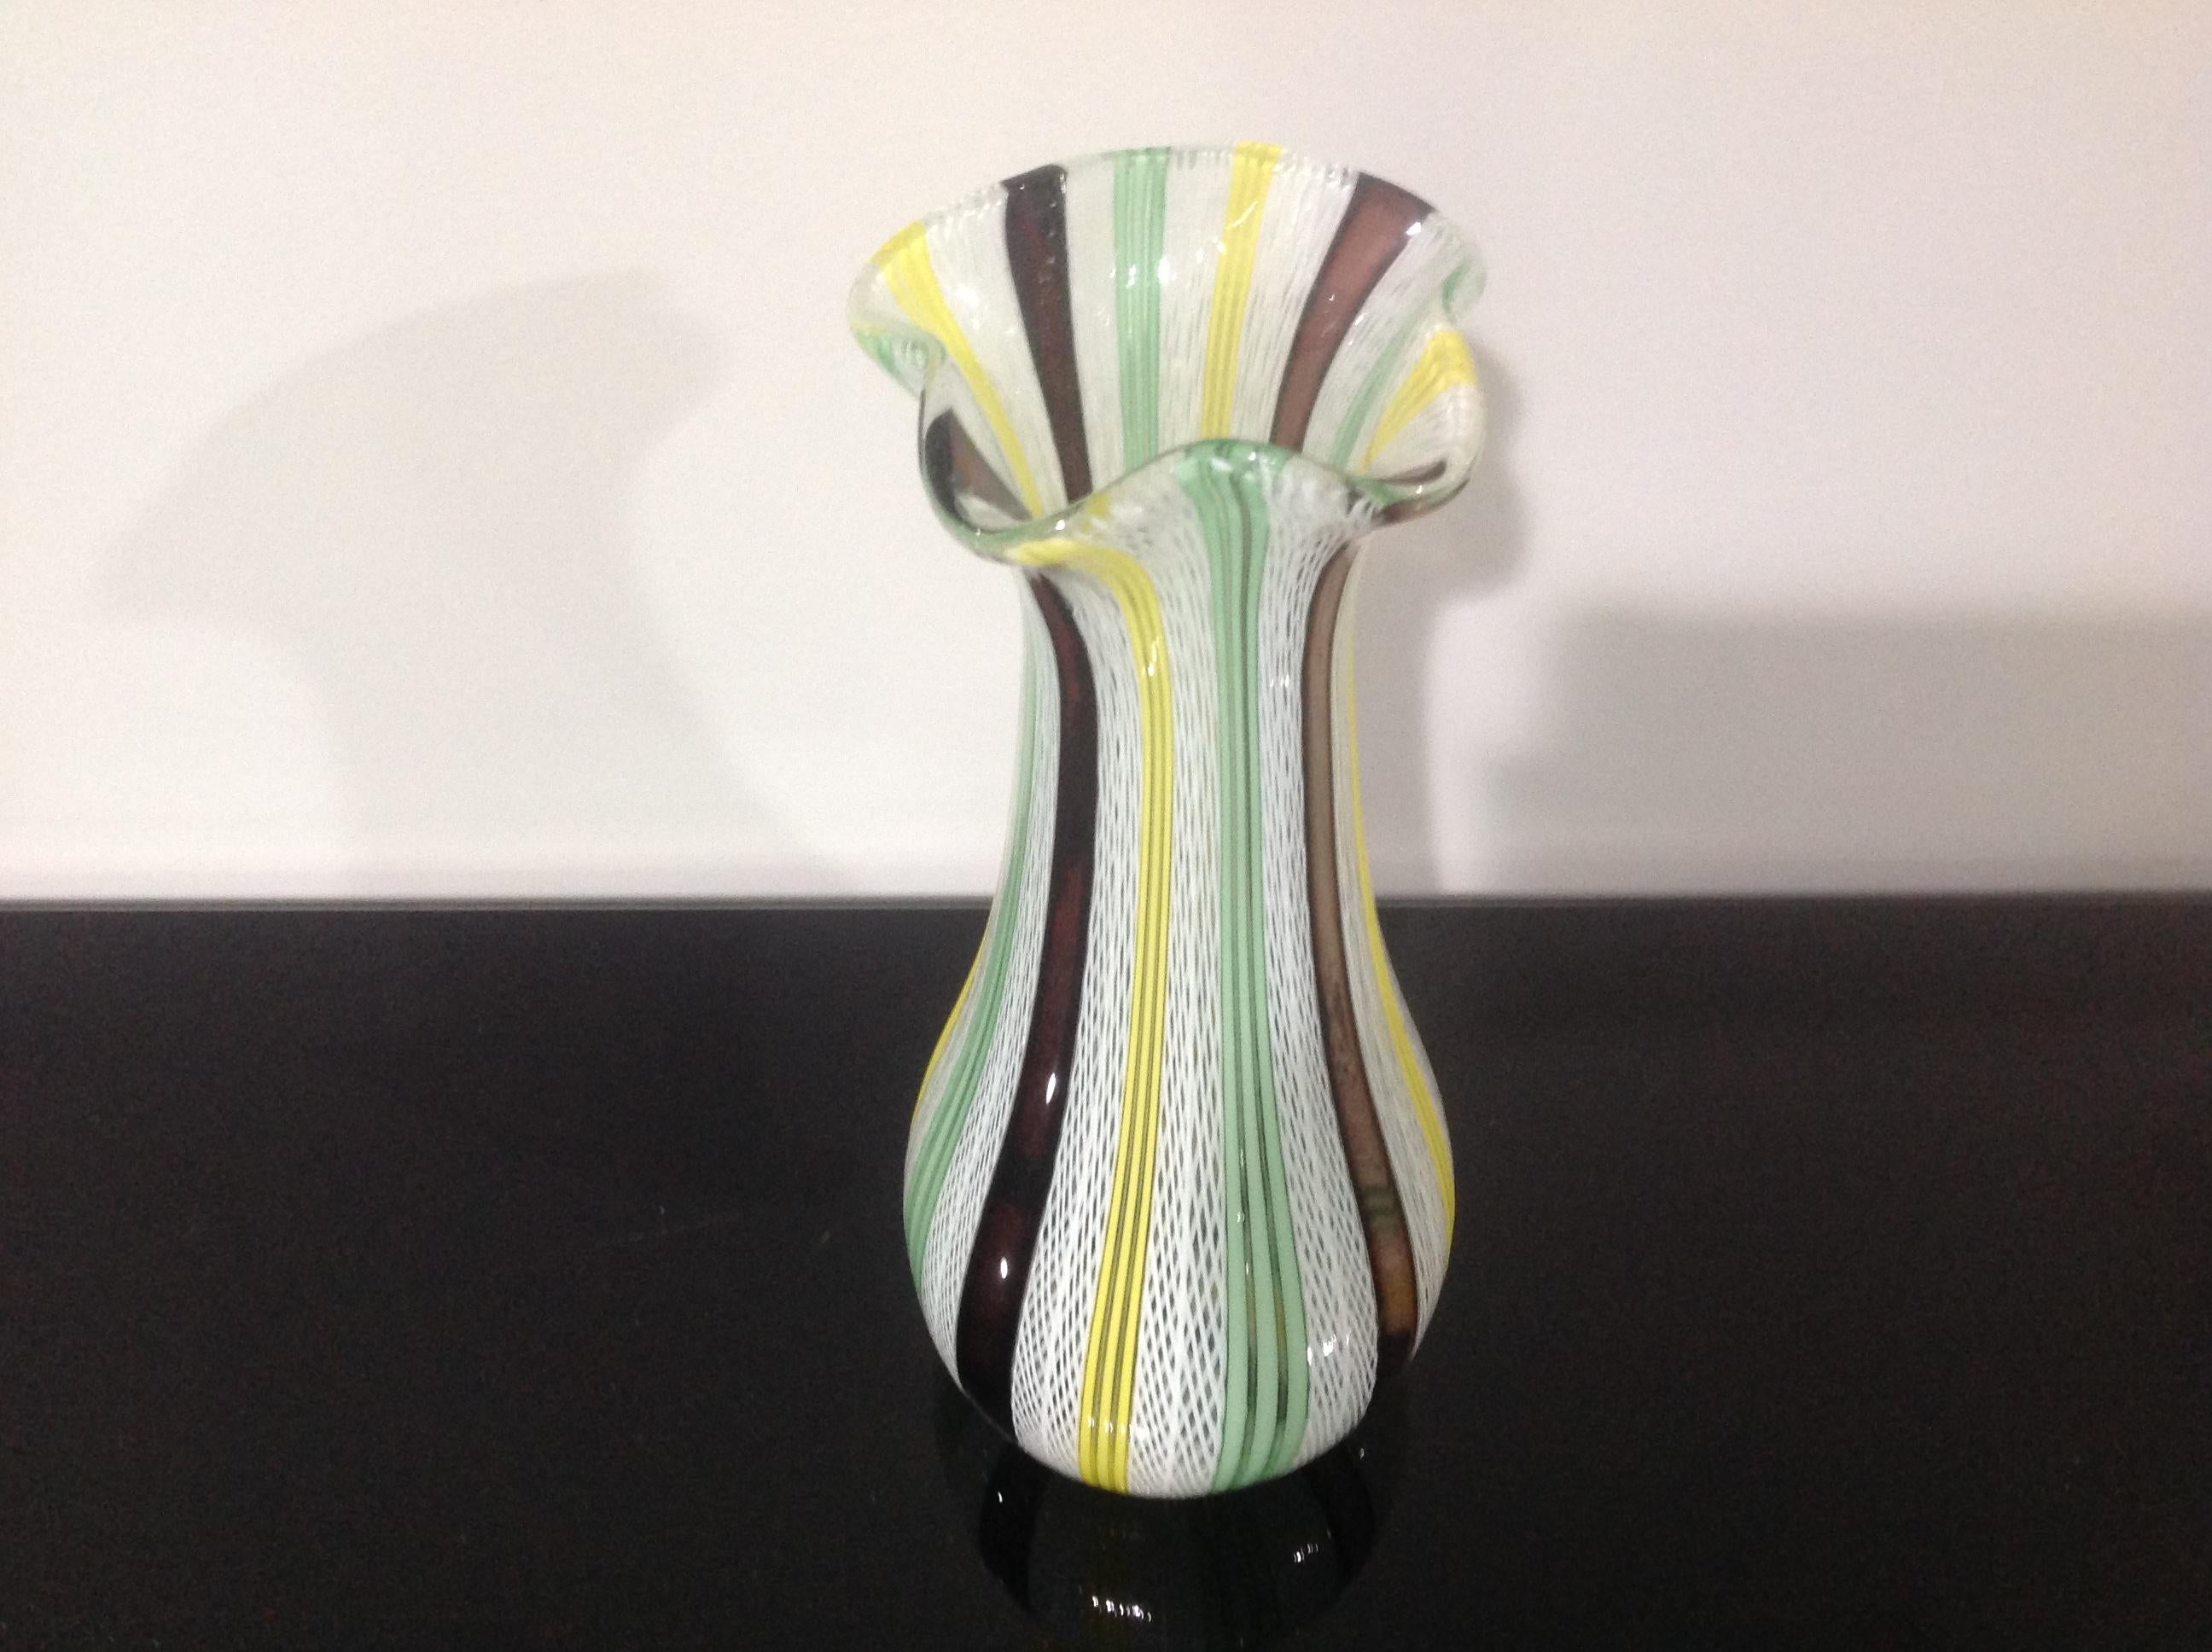 Vibrant and colorful murano latticino vase.